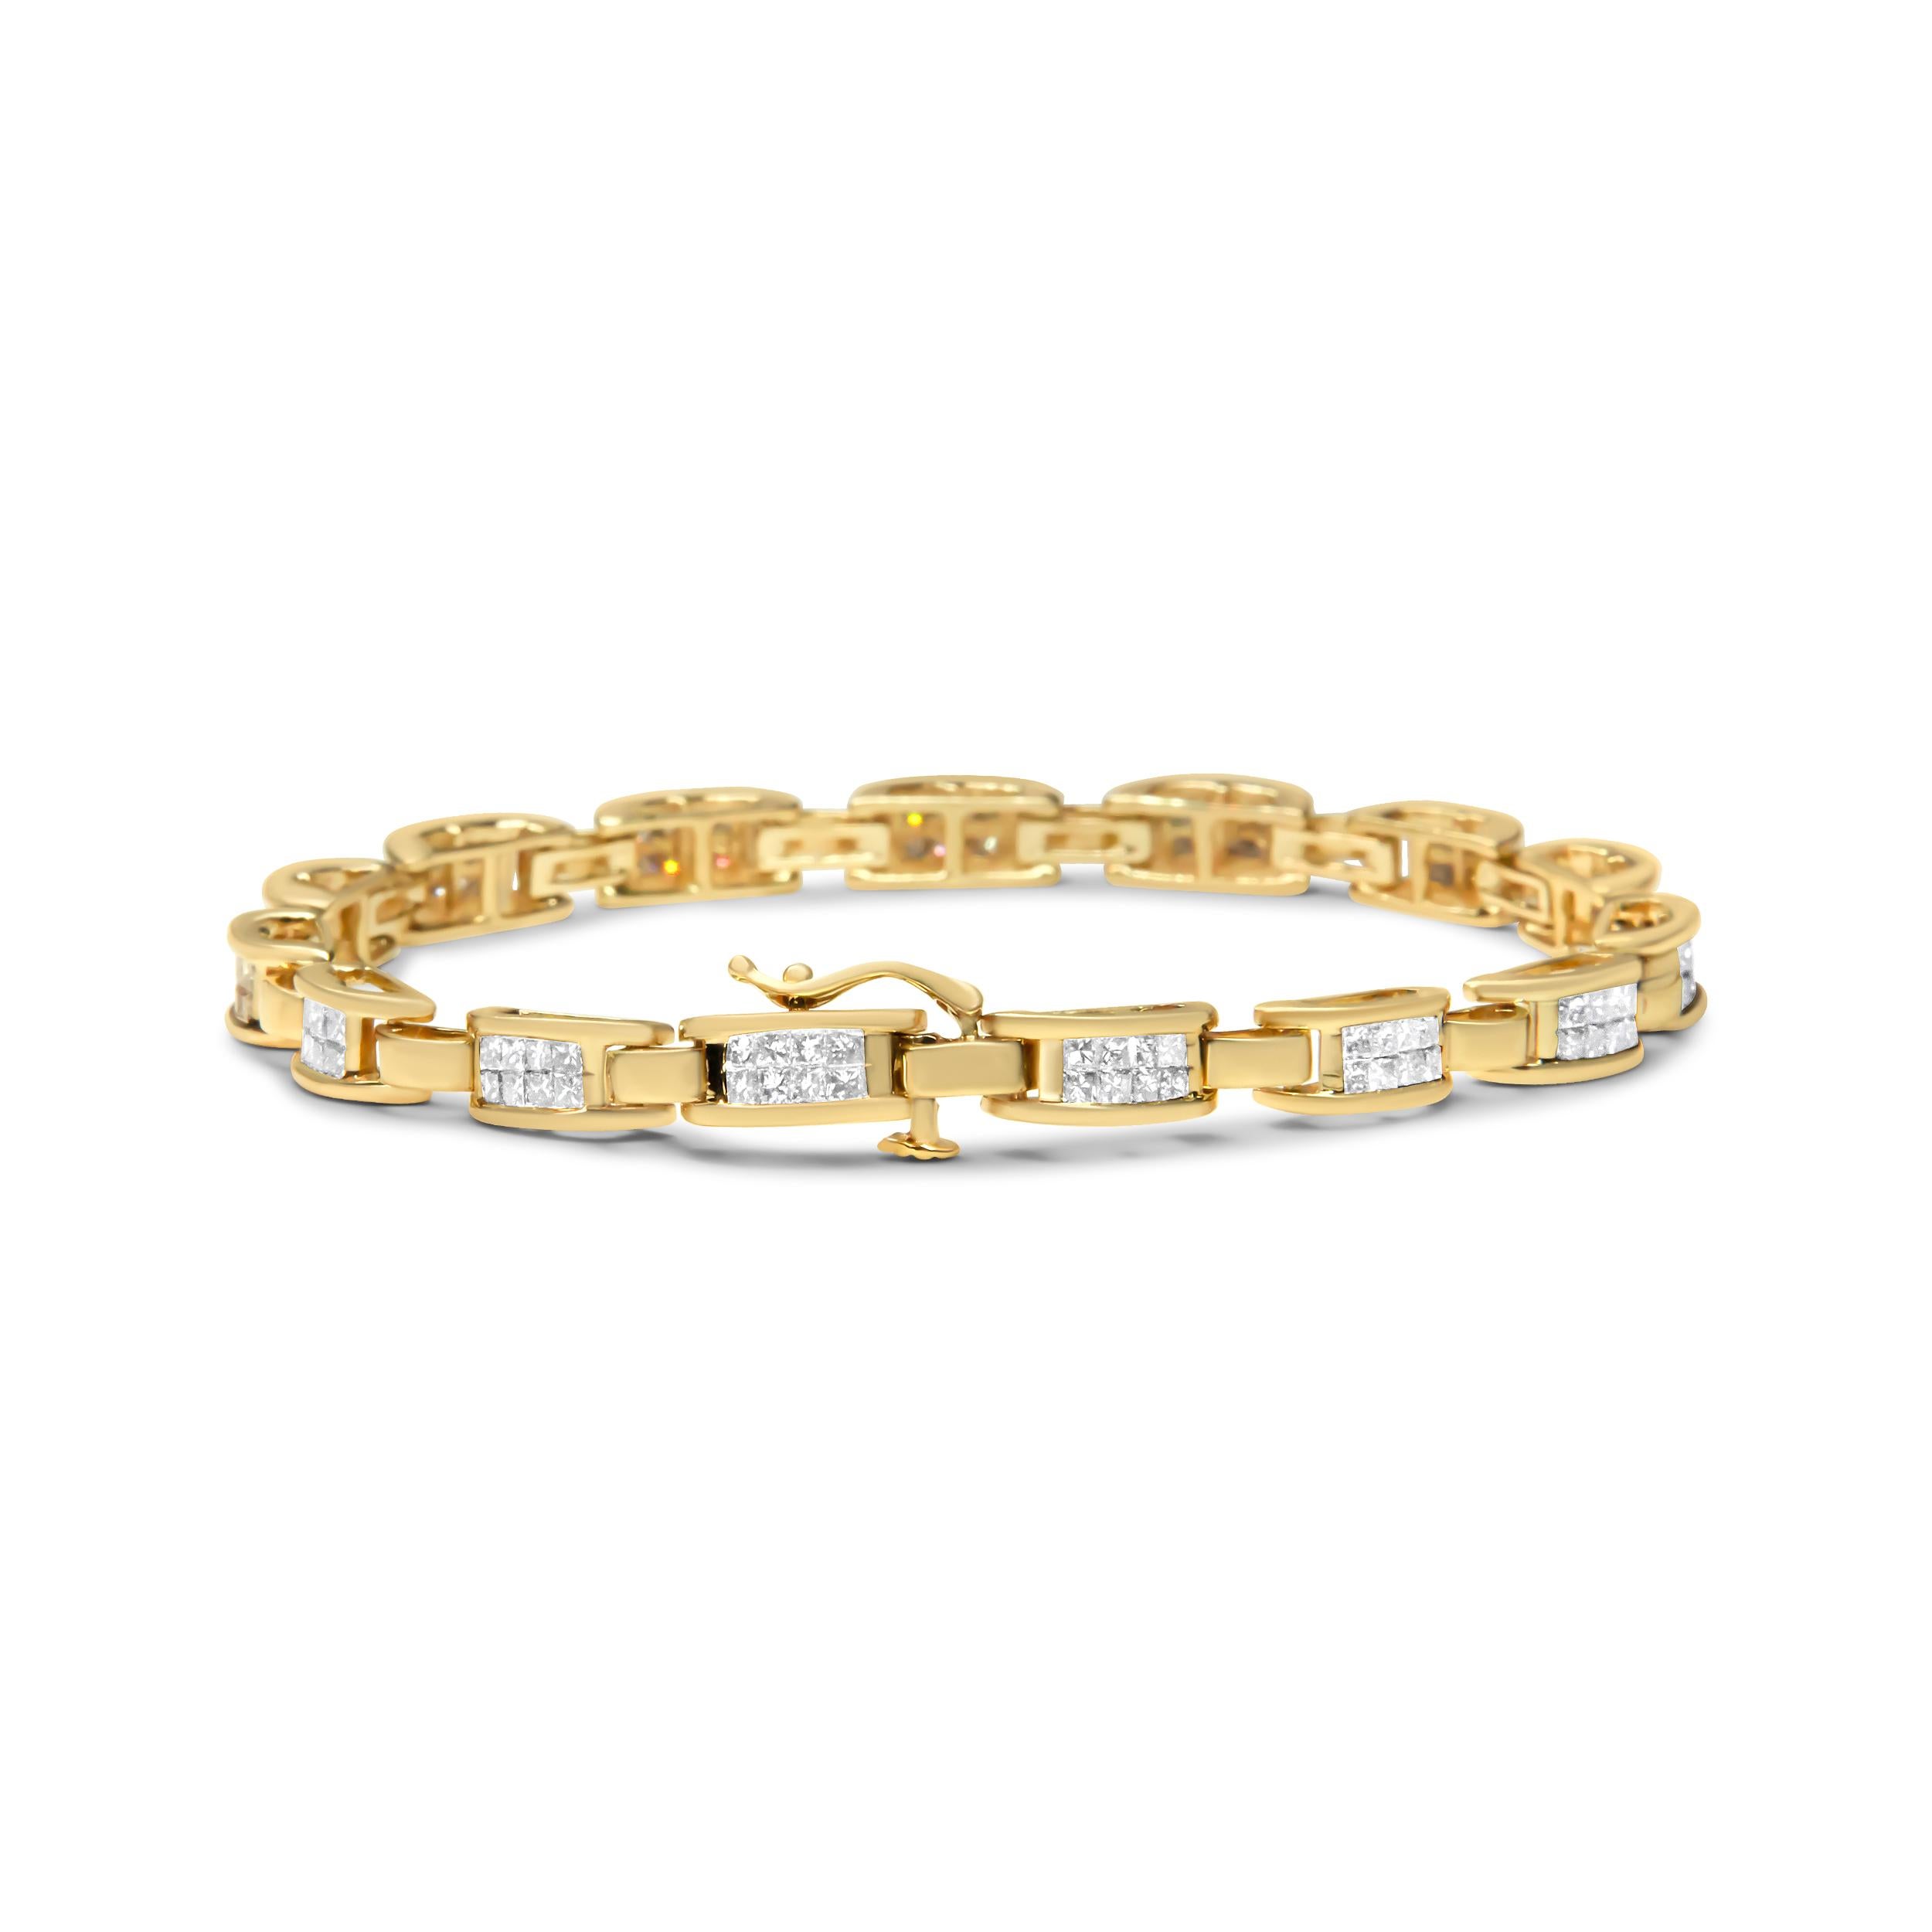 Ce bracelet scintillant est conçu avec un motif de s-link en or qui brillera sur votre poignet. Chaque maillon encadre un superbe diamant naturel de taille ronde dans un élégant sertissage à griffes. La pièce affiche un poids total de diamants